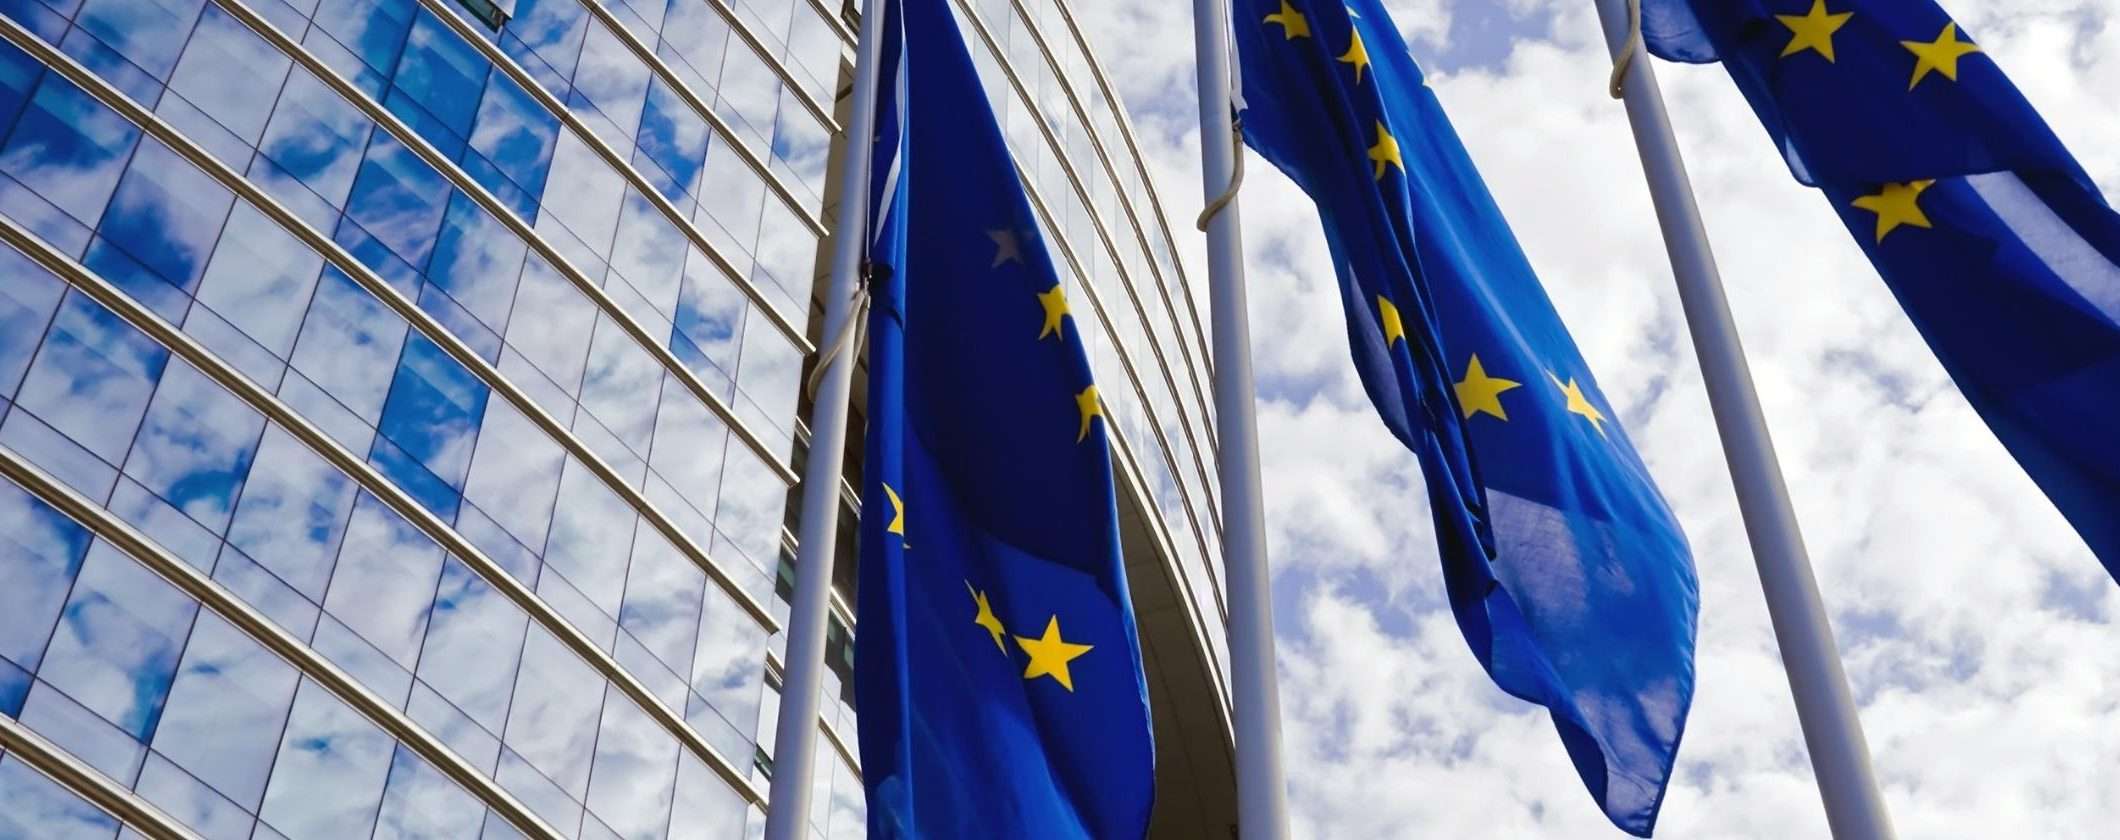 Criptovalute Vs sanzioni: l'UE sta prendendo misure contro la Russia